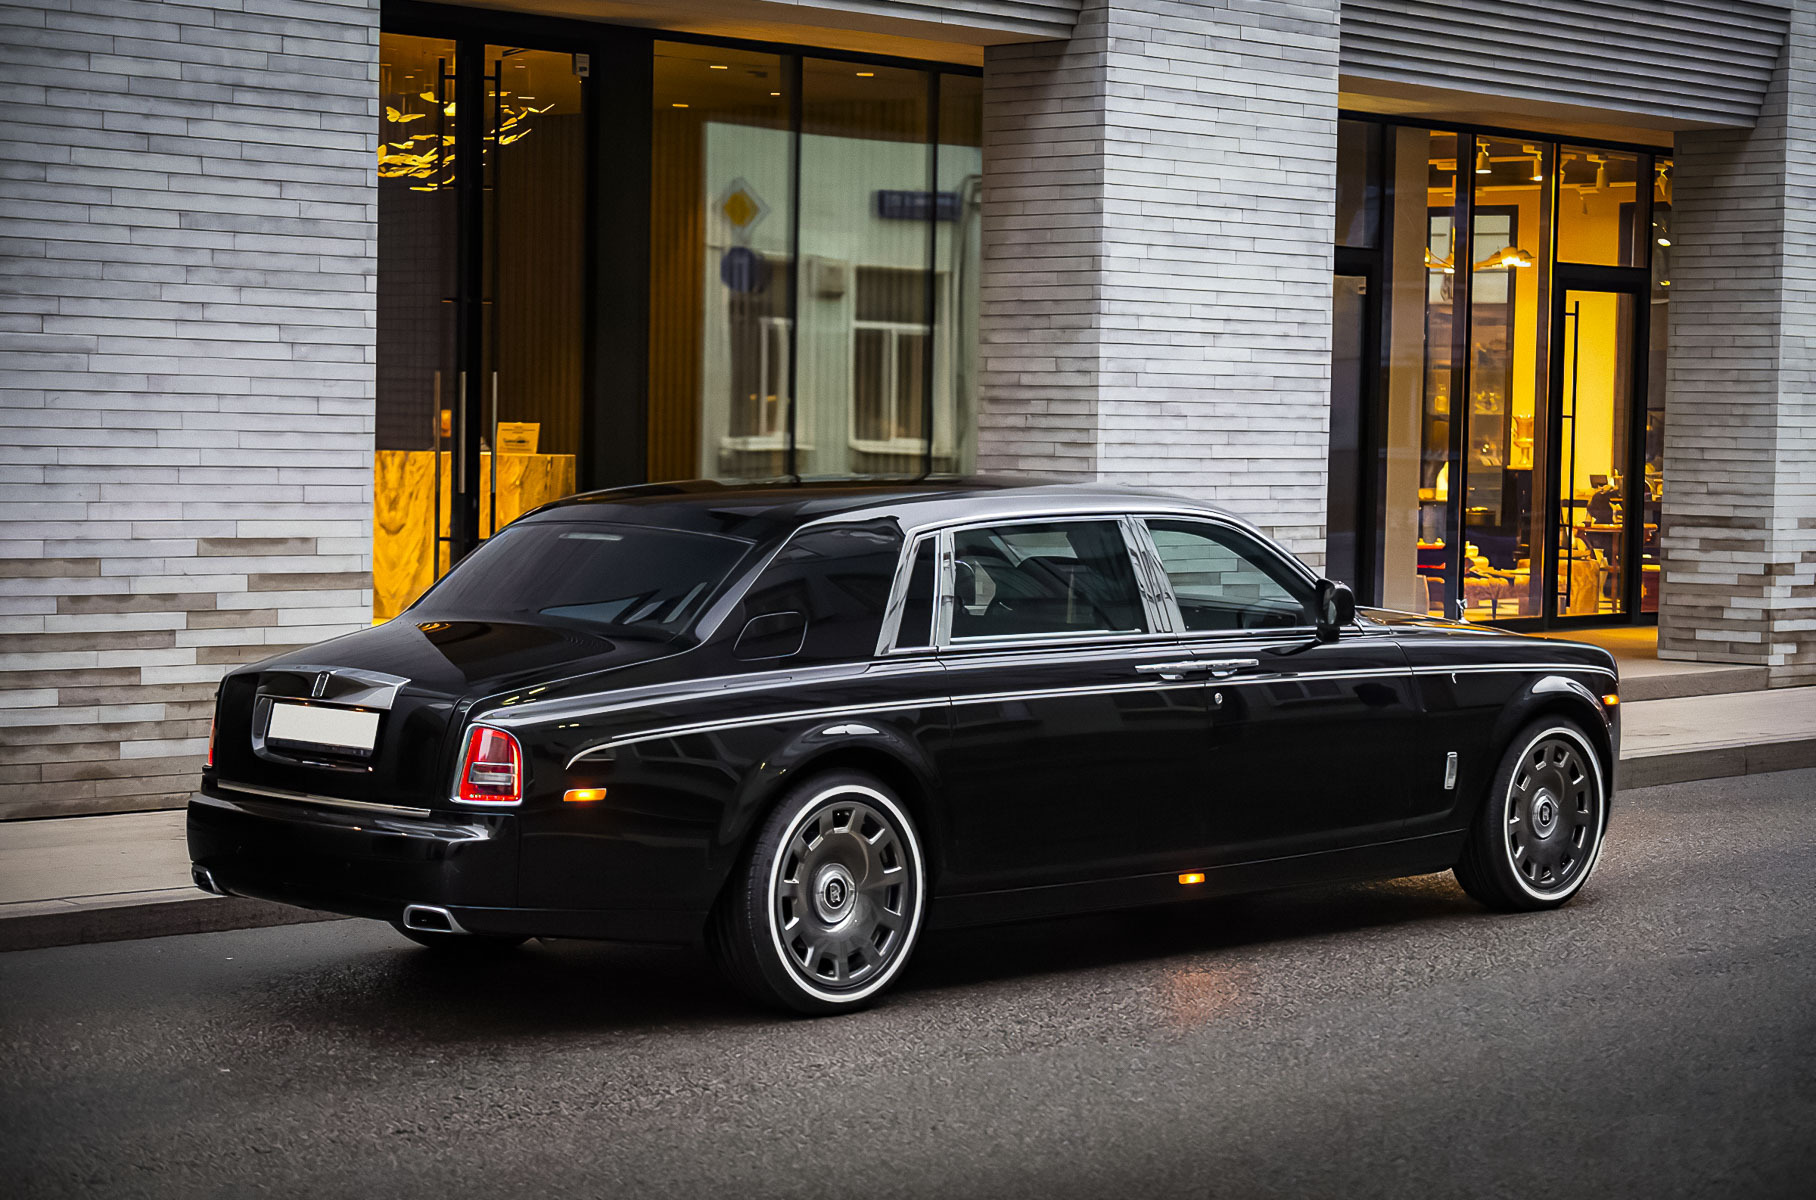 Необычную версию Rolls-Royce Phantom продают в Москве за 19 миллионов рублей Новости